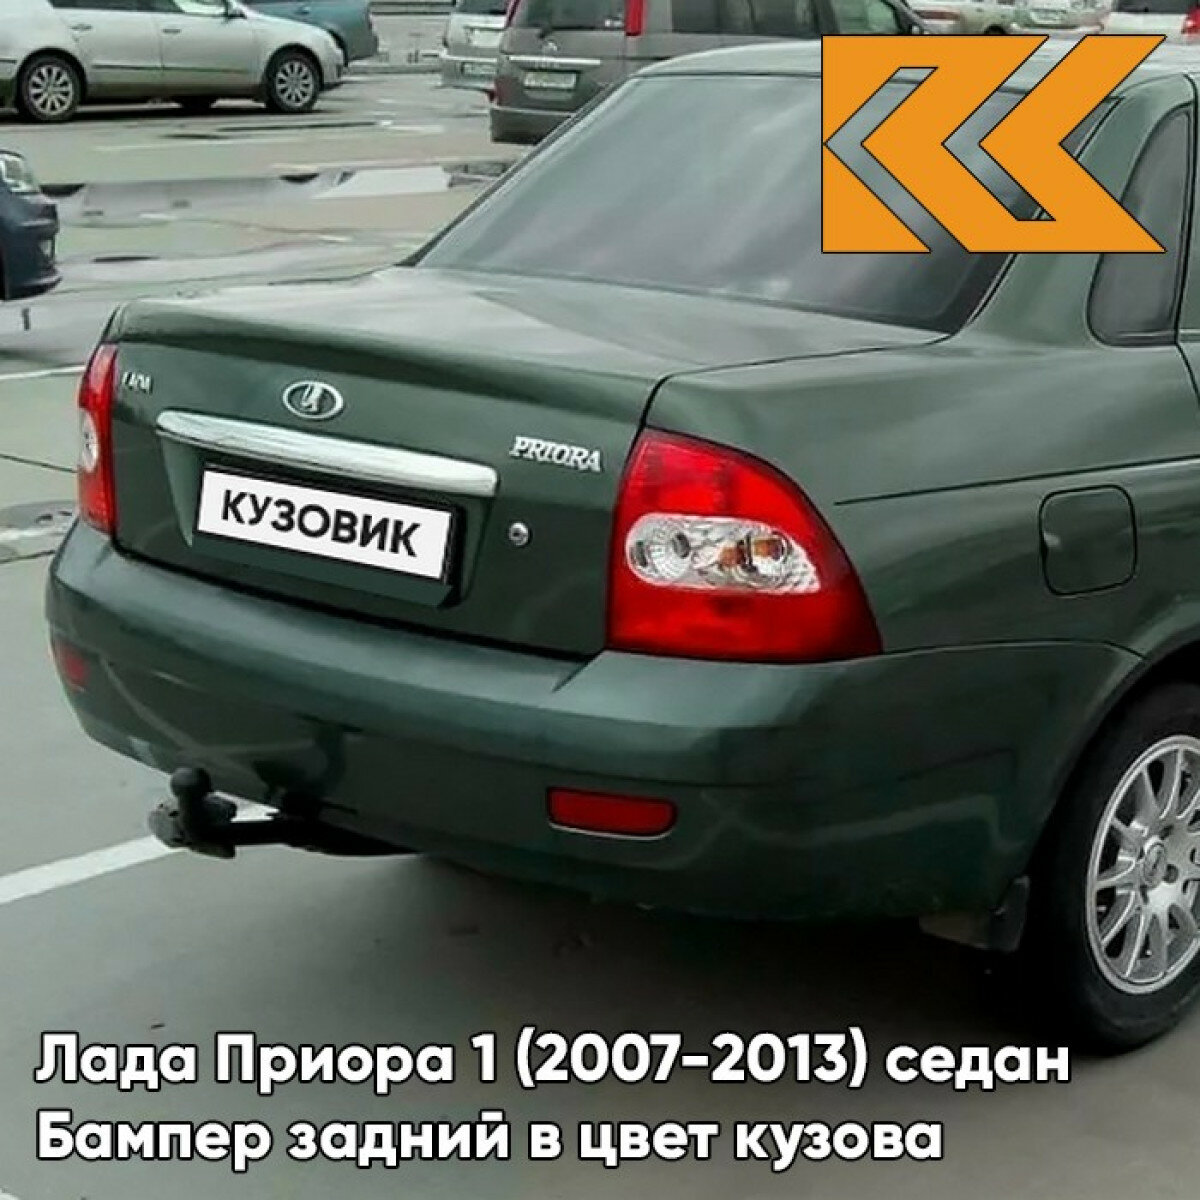 Бампер задний в цвет Лада Приора 1 (2007-2013) седан 317 - Меридиан - Зеленый